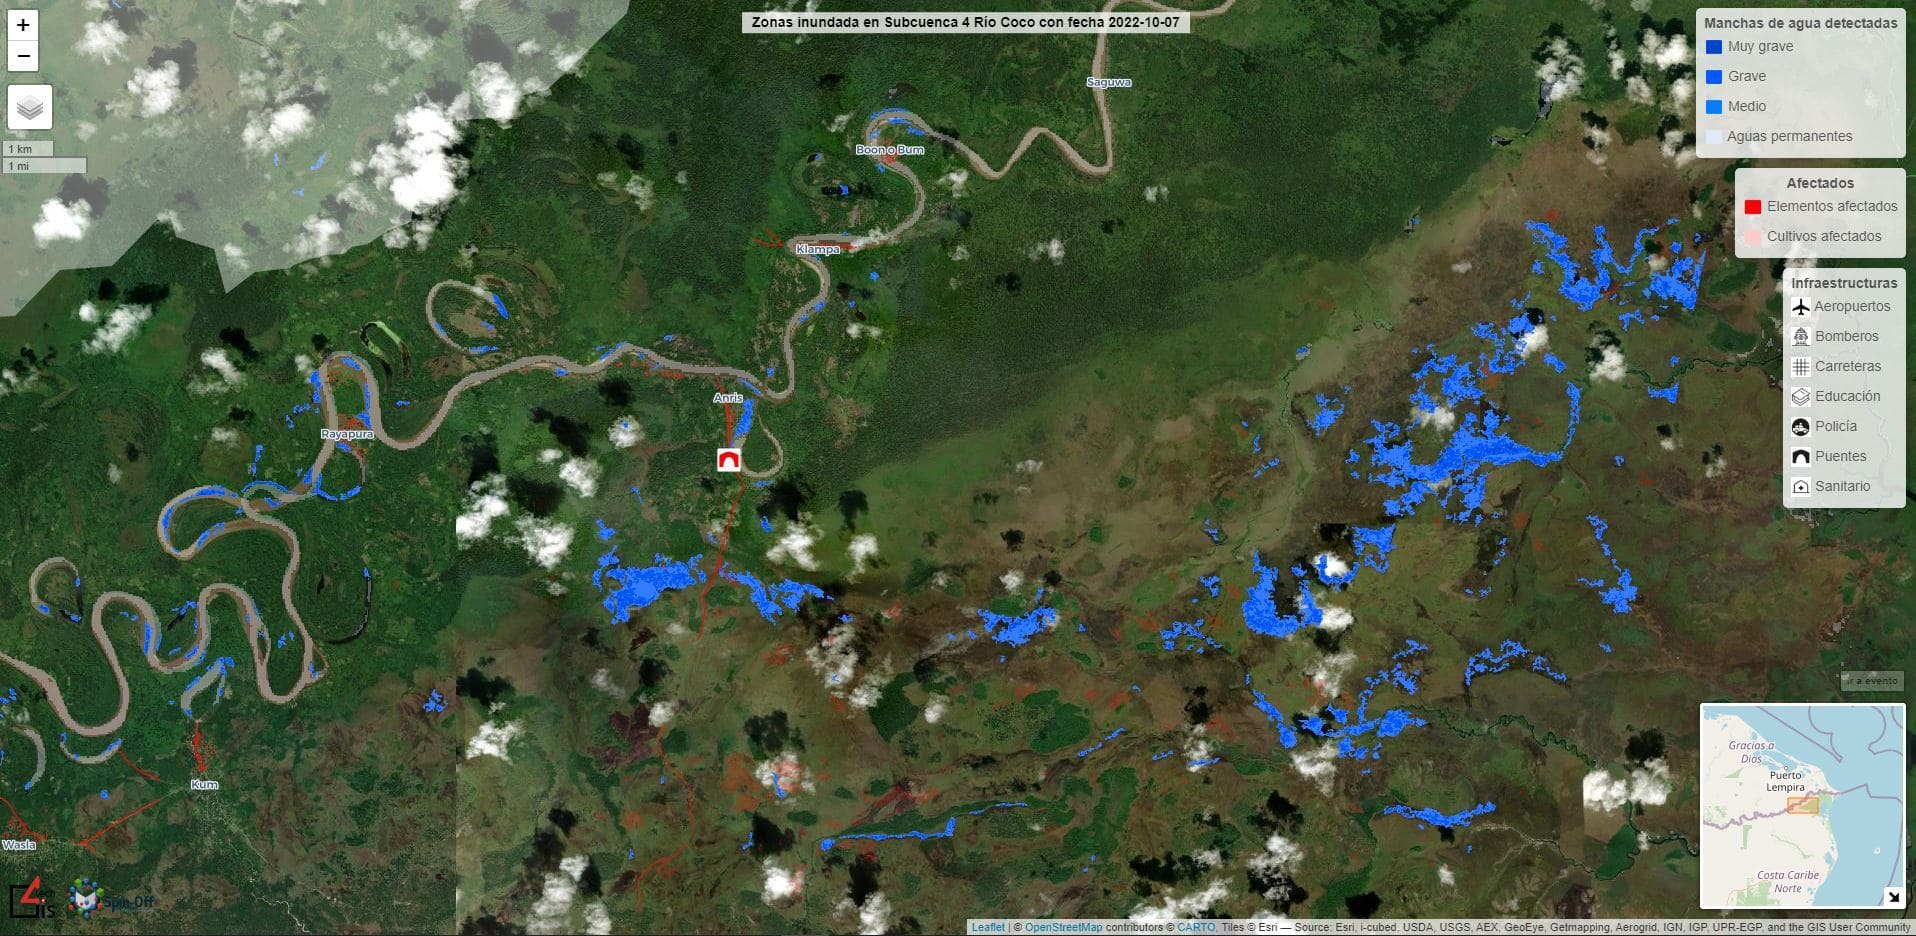 Visor de inundaciones que muestra y monitorea el estado de personas e infraestructuras tras una inundación